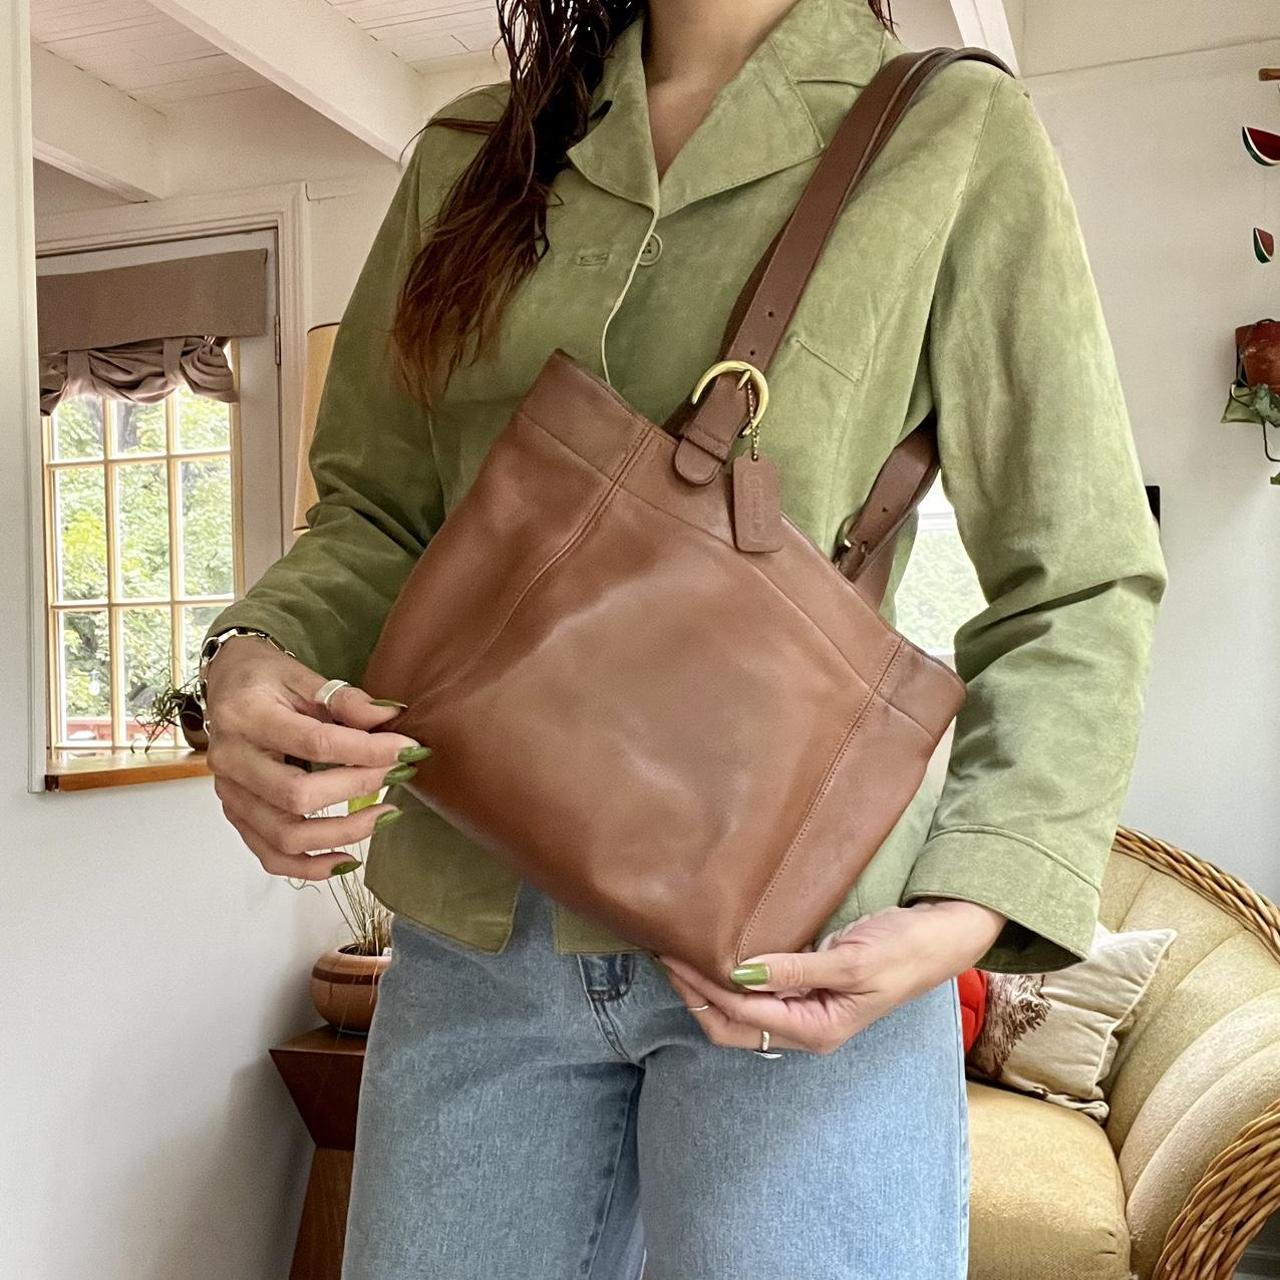 Vintage Brown Leather Coach Purse Shoulder Bag USA Made 